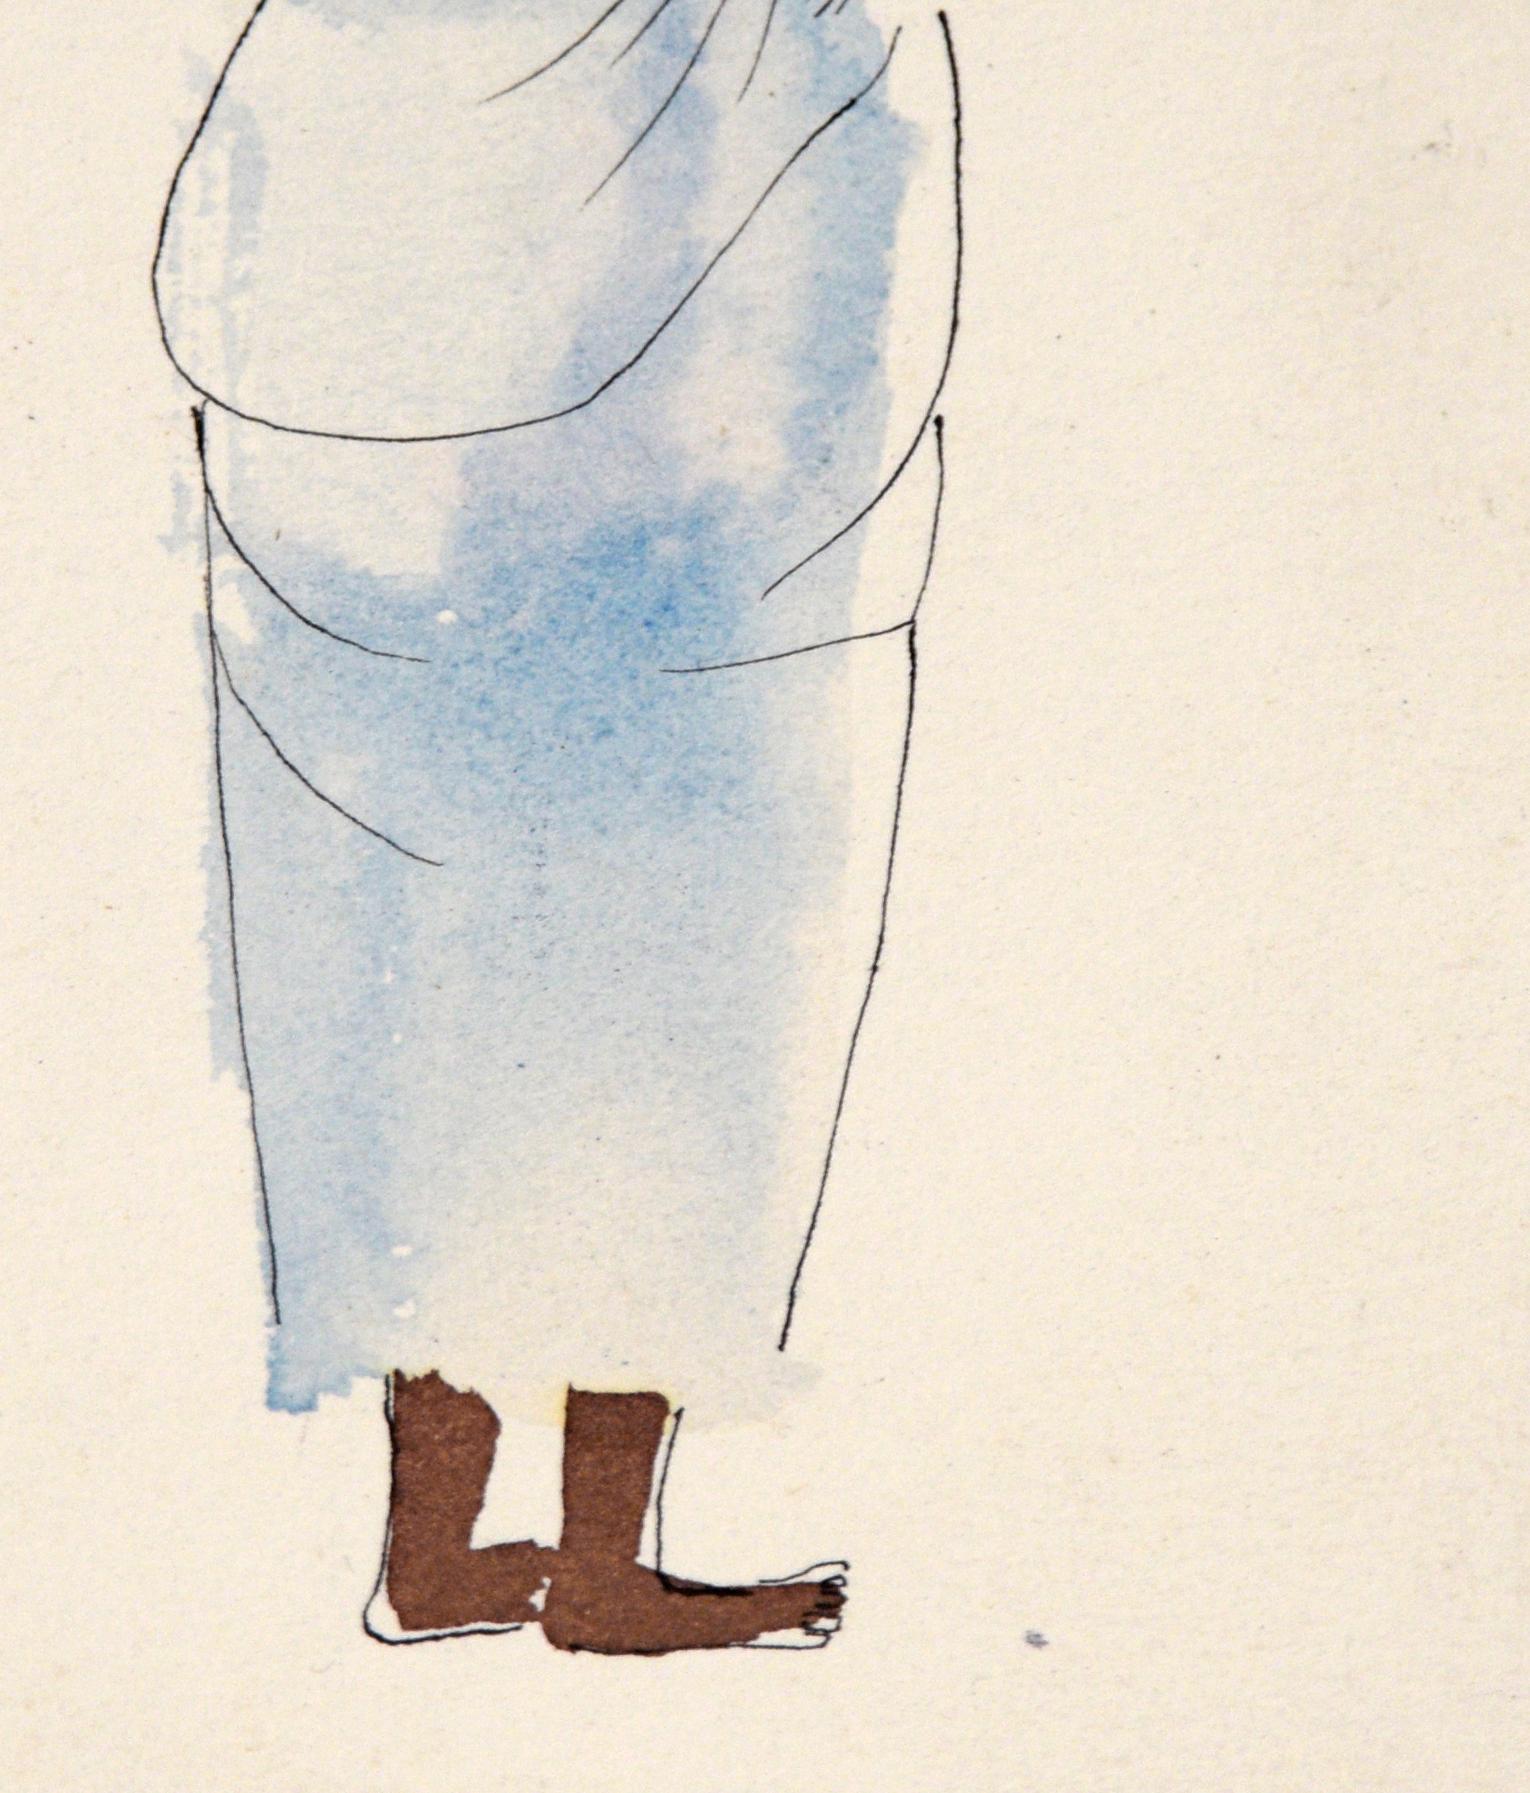 Mama africaine - Illustration vintage à l'encre et à l'aquarelle

Une charmante illustration, réalisée par Irene Pattinson (américaine, 1909-1999), montre une femme avec un seau sur la tête et un bébé en écharpe dans le dos. Elle lit un livre ou un